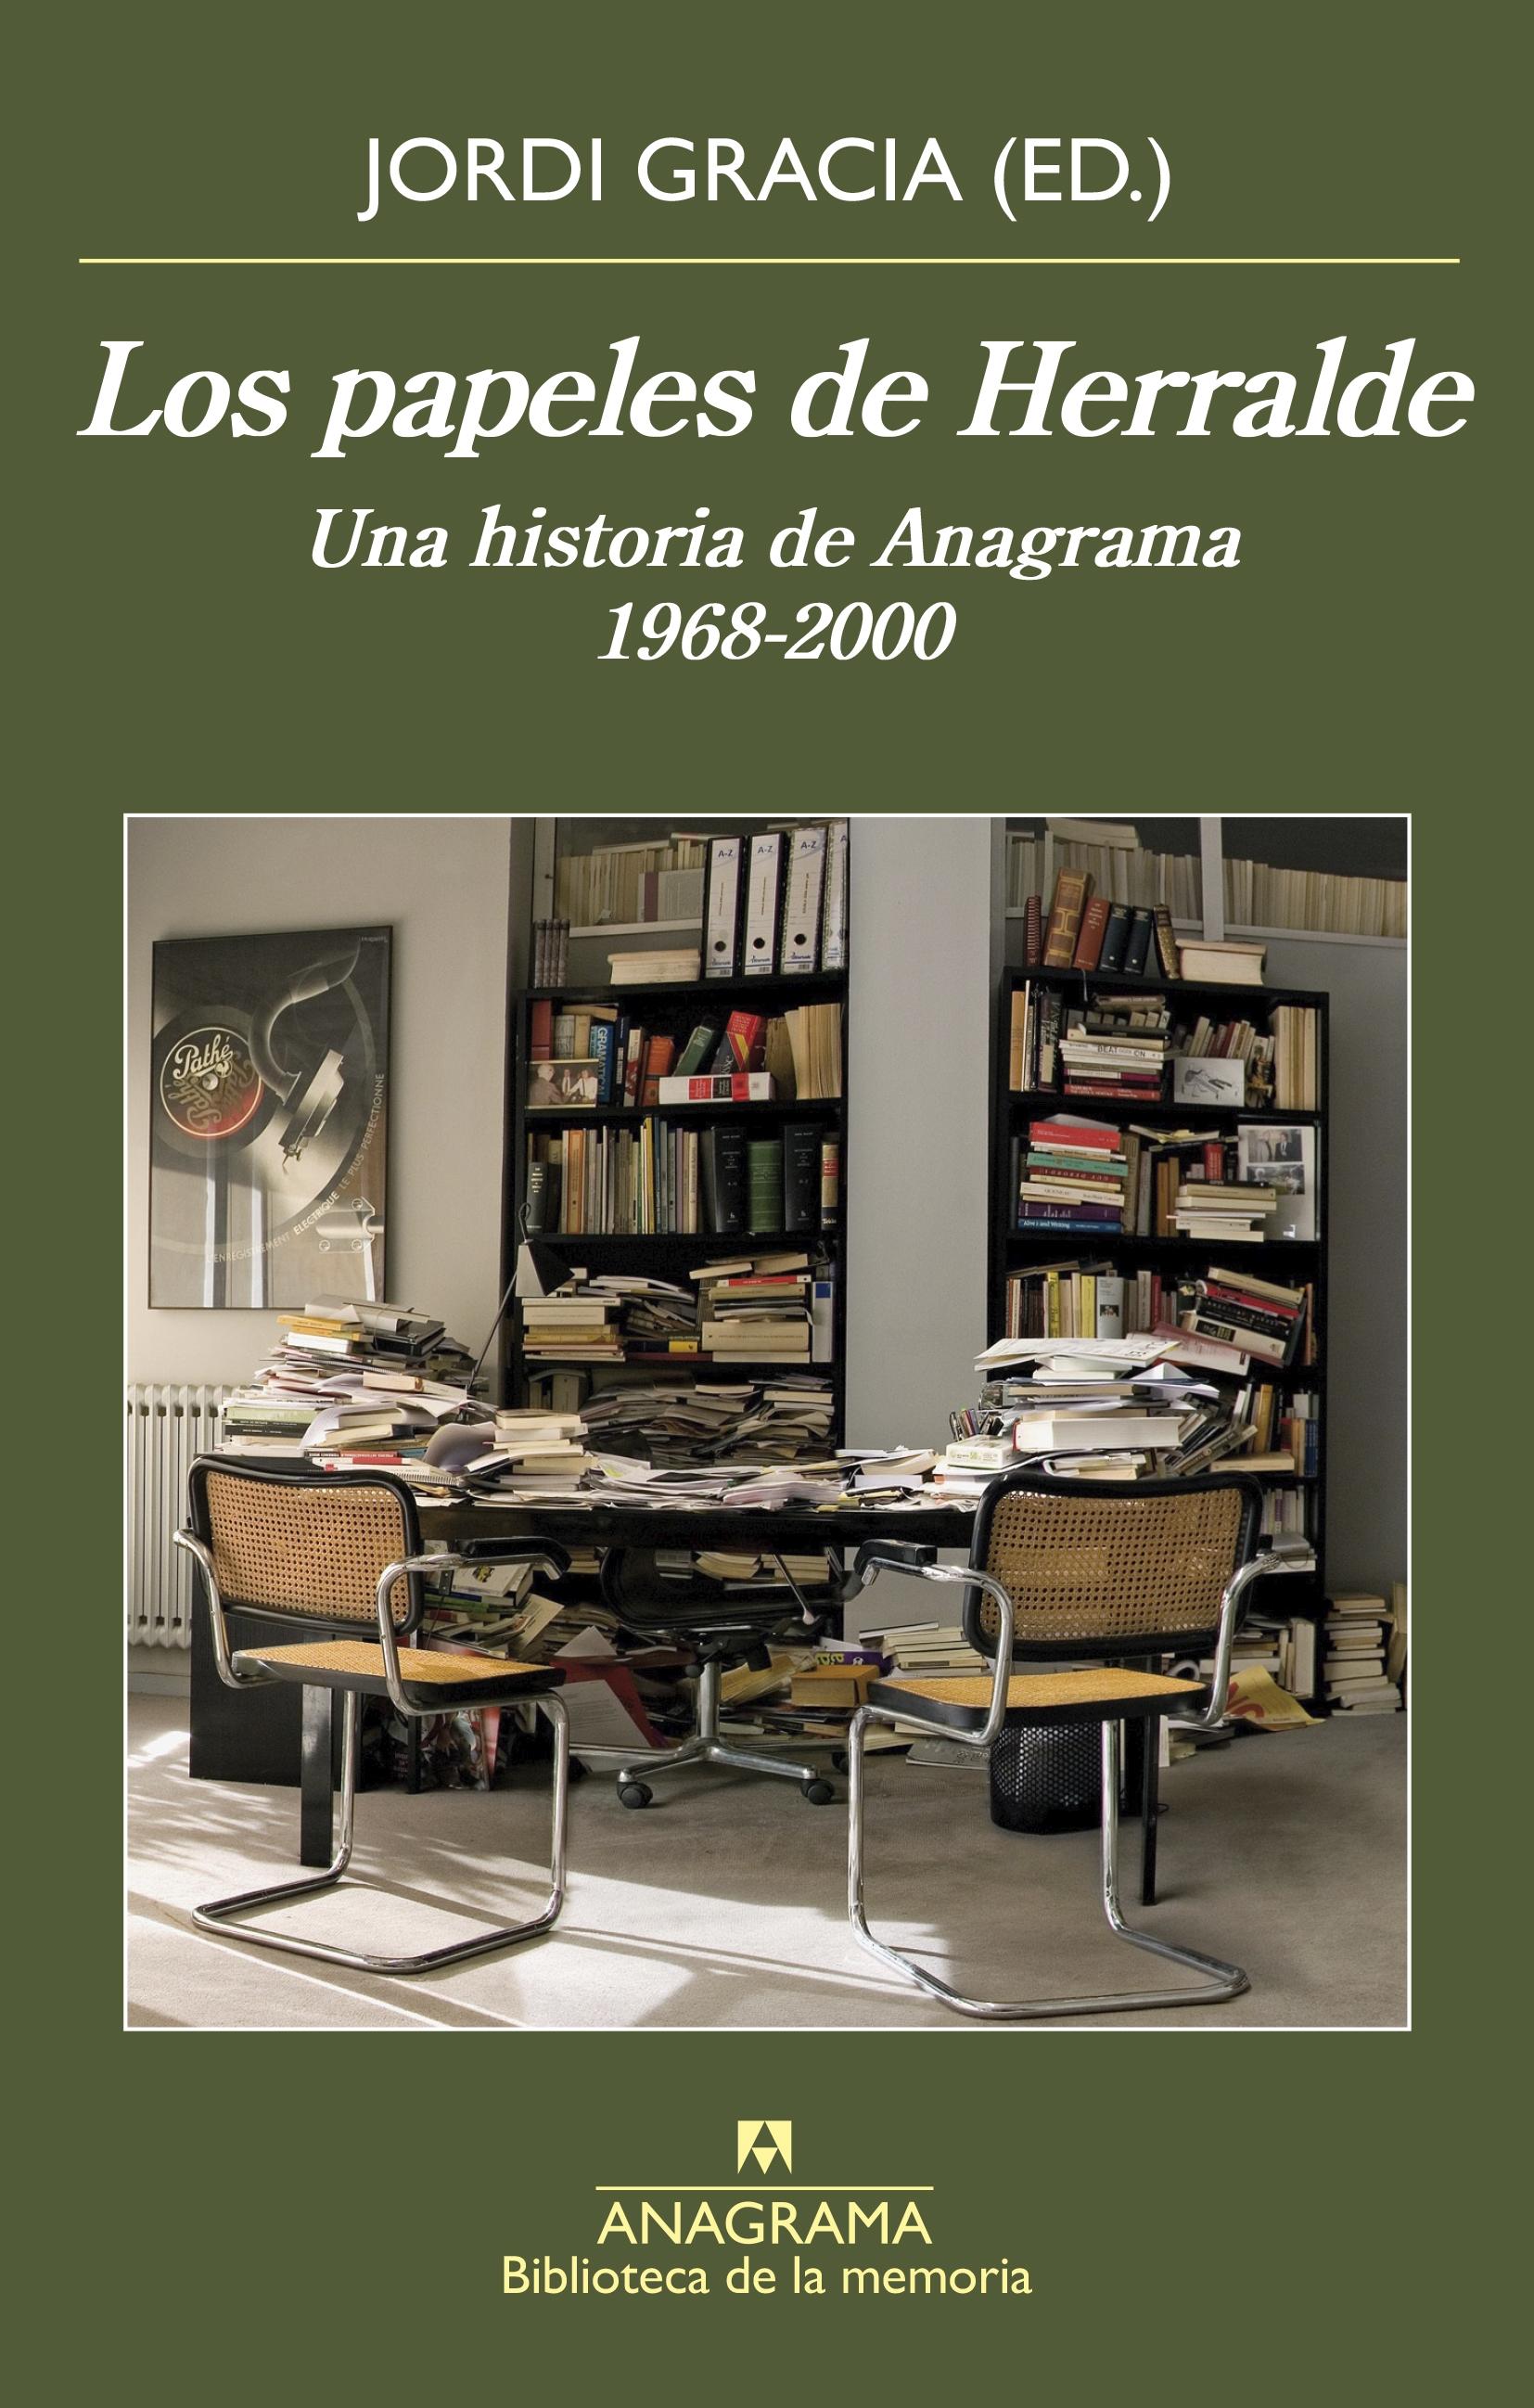 Los papeles de Herralde "Una historia de Anagrama, 1968-2000". 